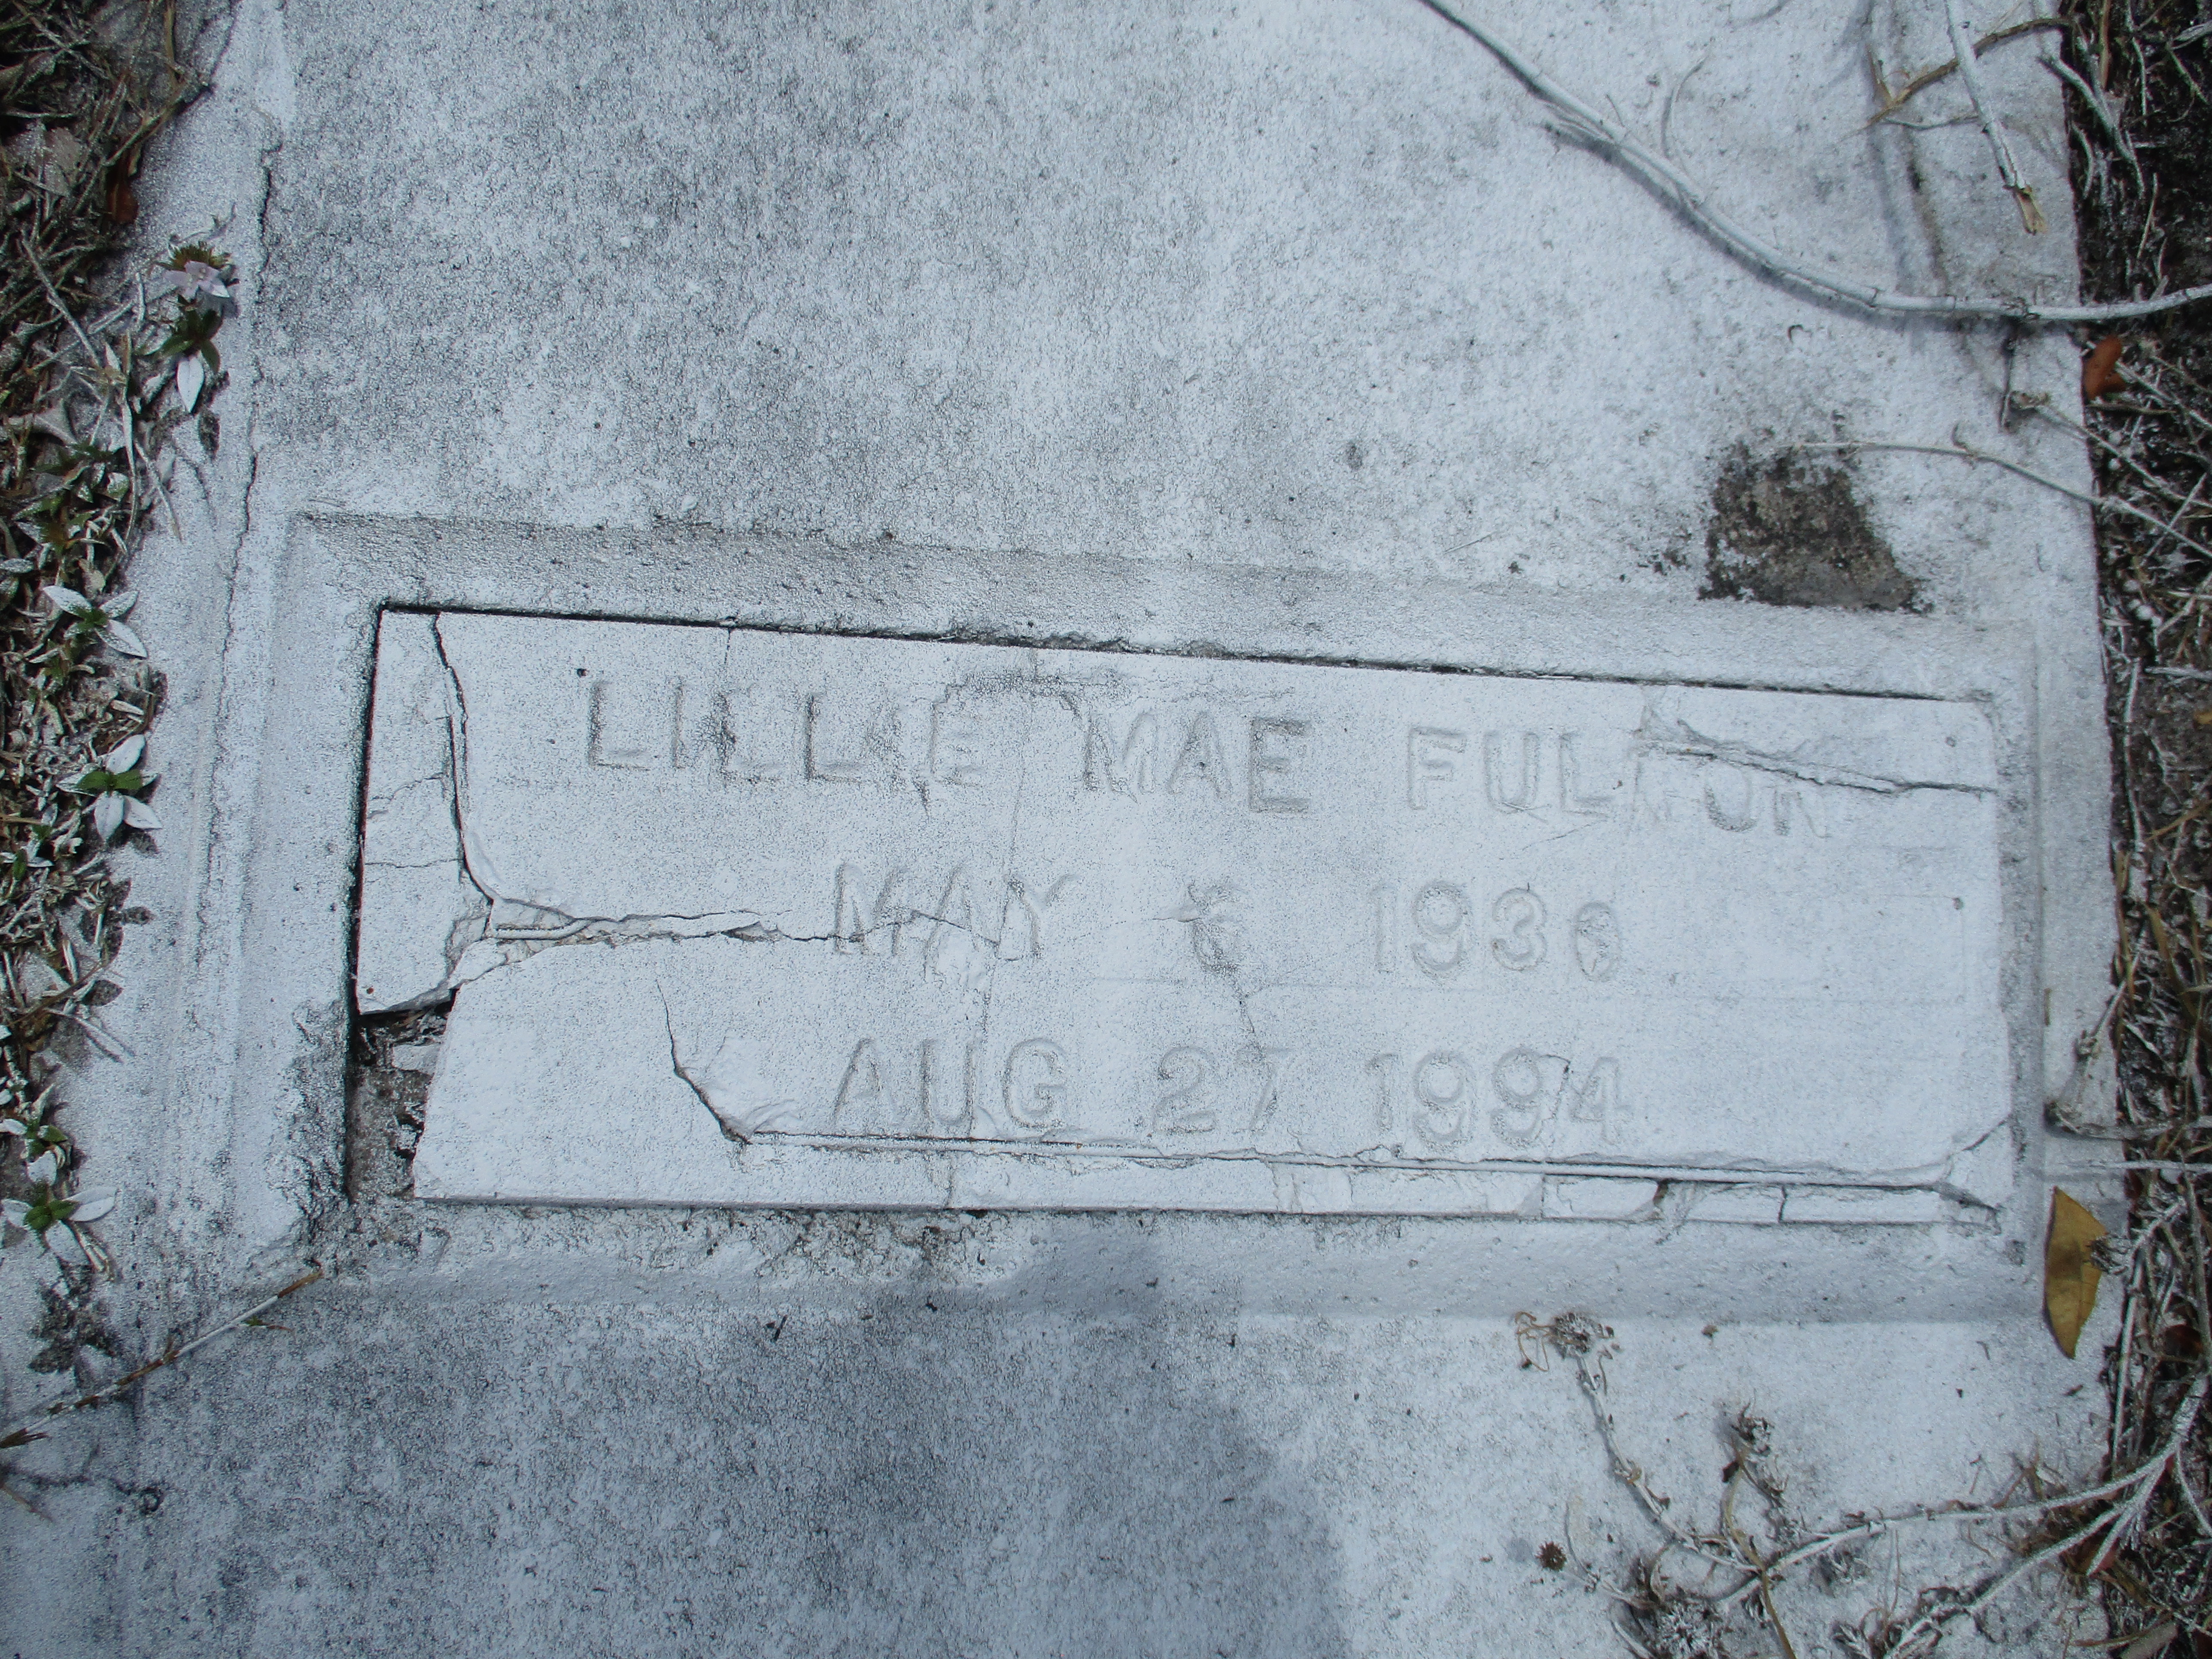 Lillie Mae Fulton